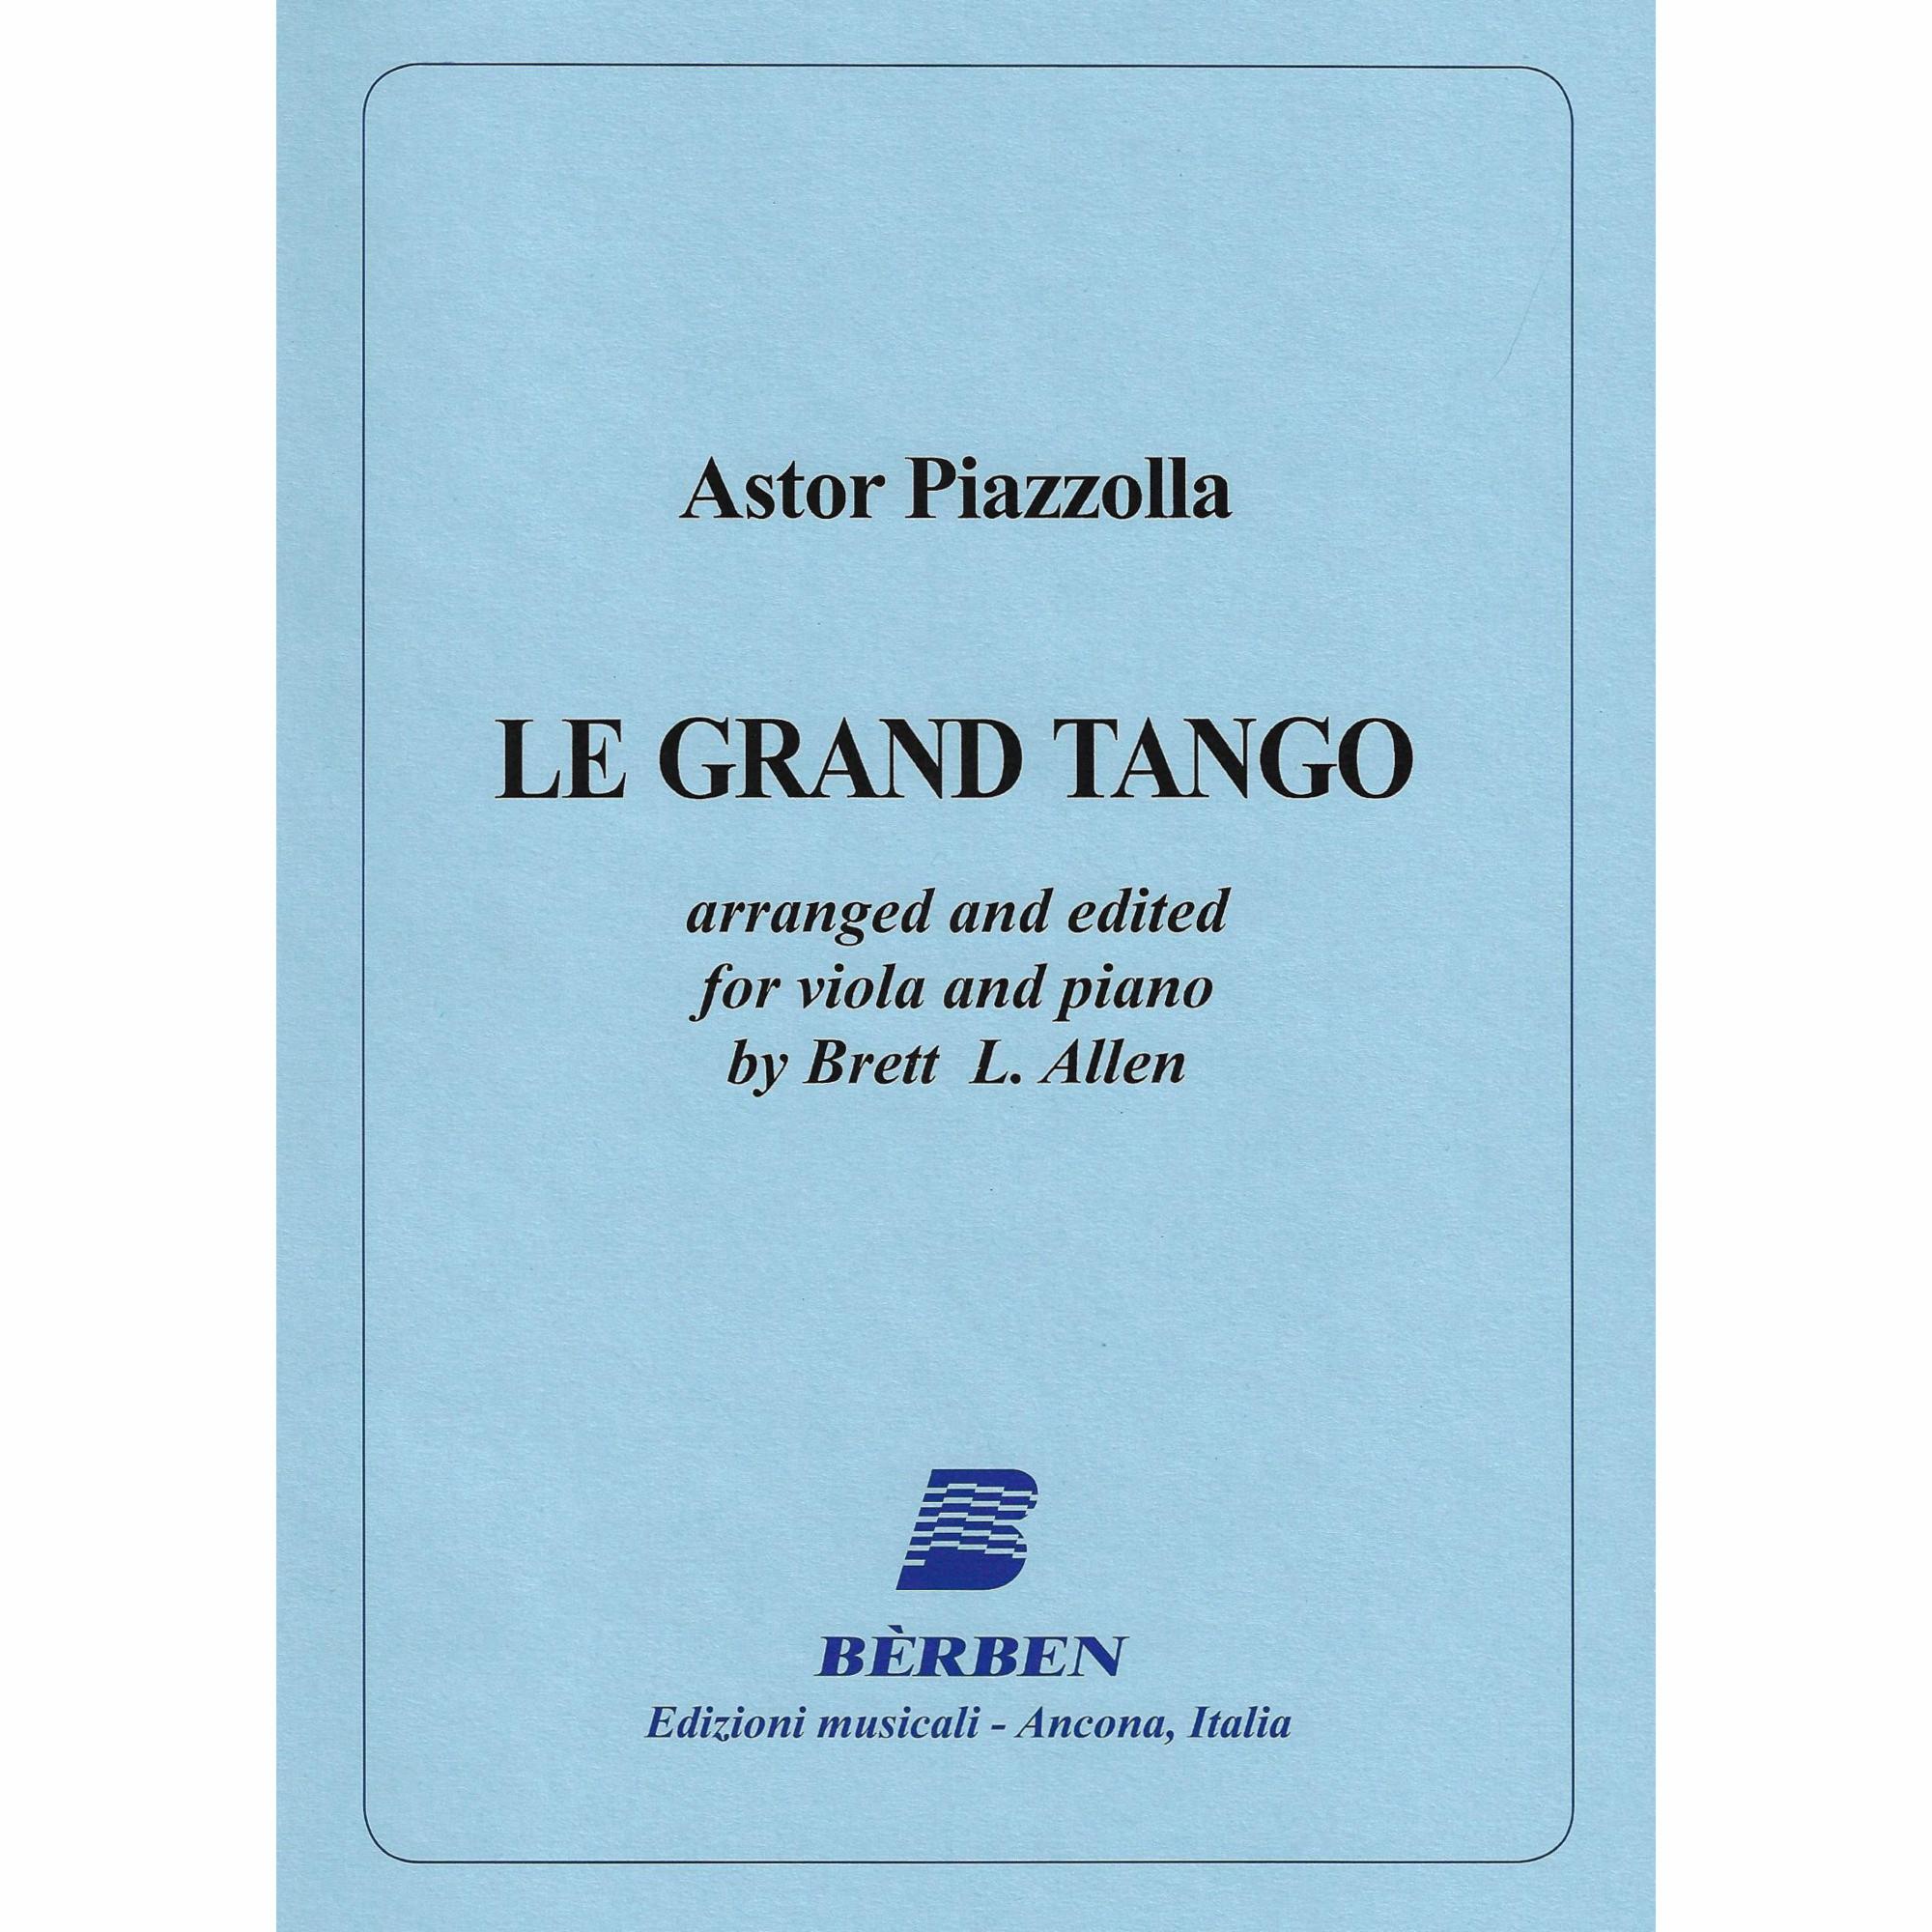 Le Grand Tango for Viola and Piano